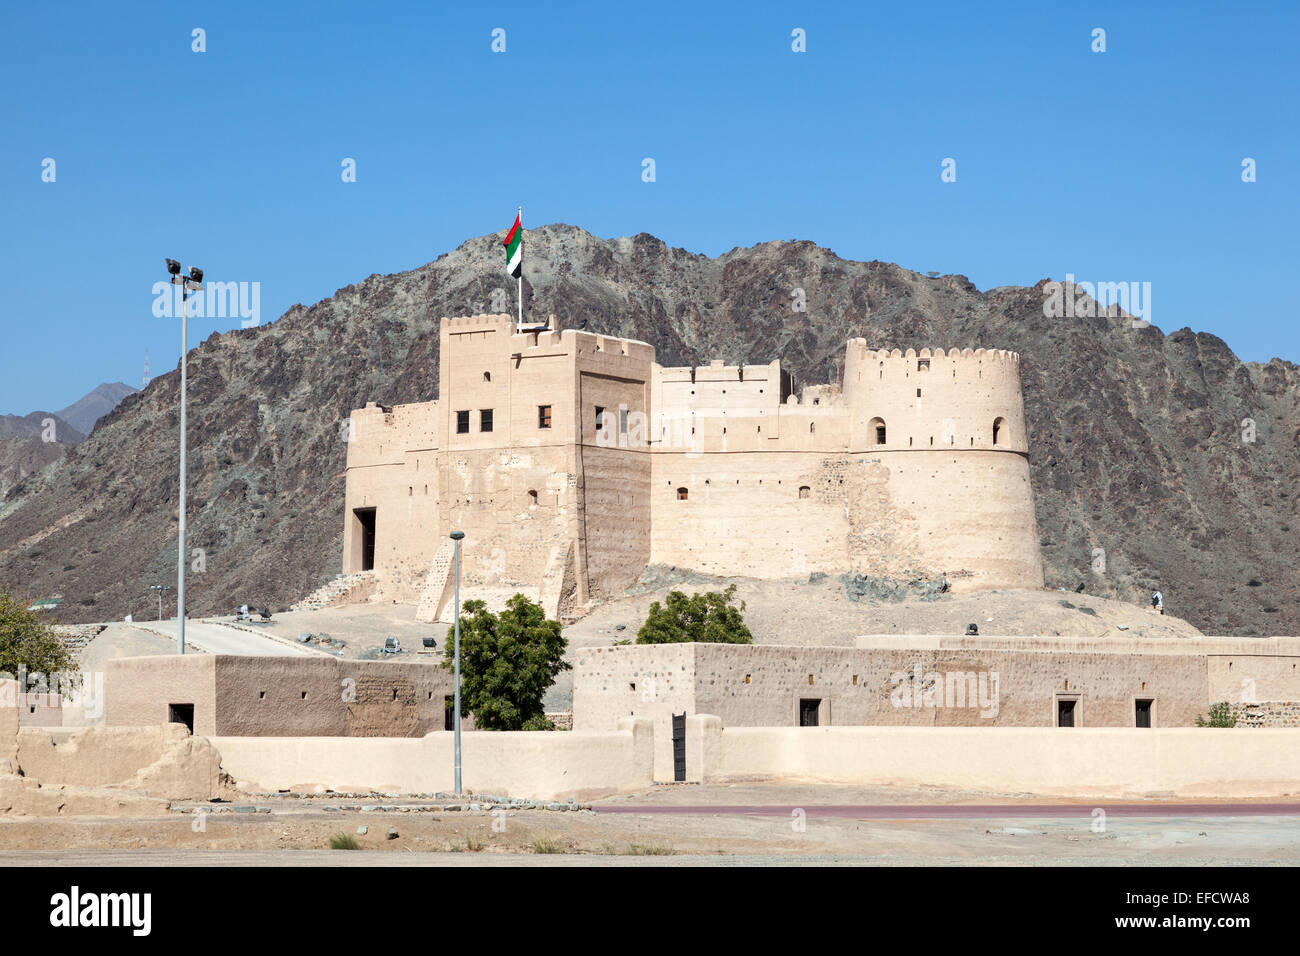 Historic fort in Fujairah, United Arab Emirates Stock Photo